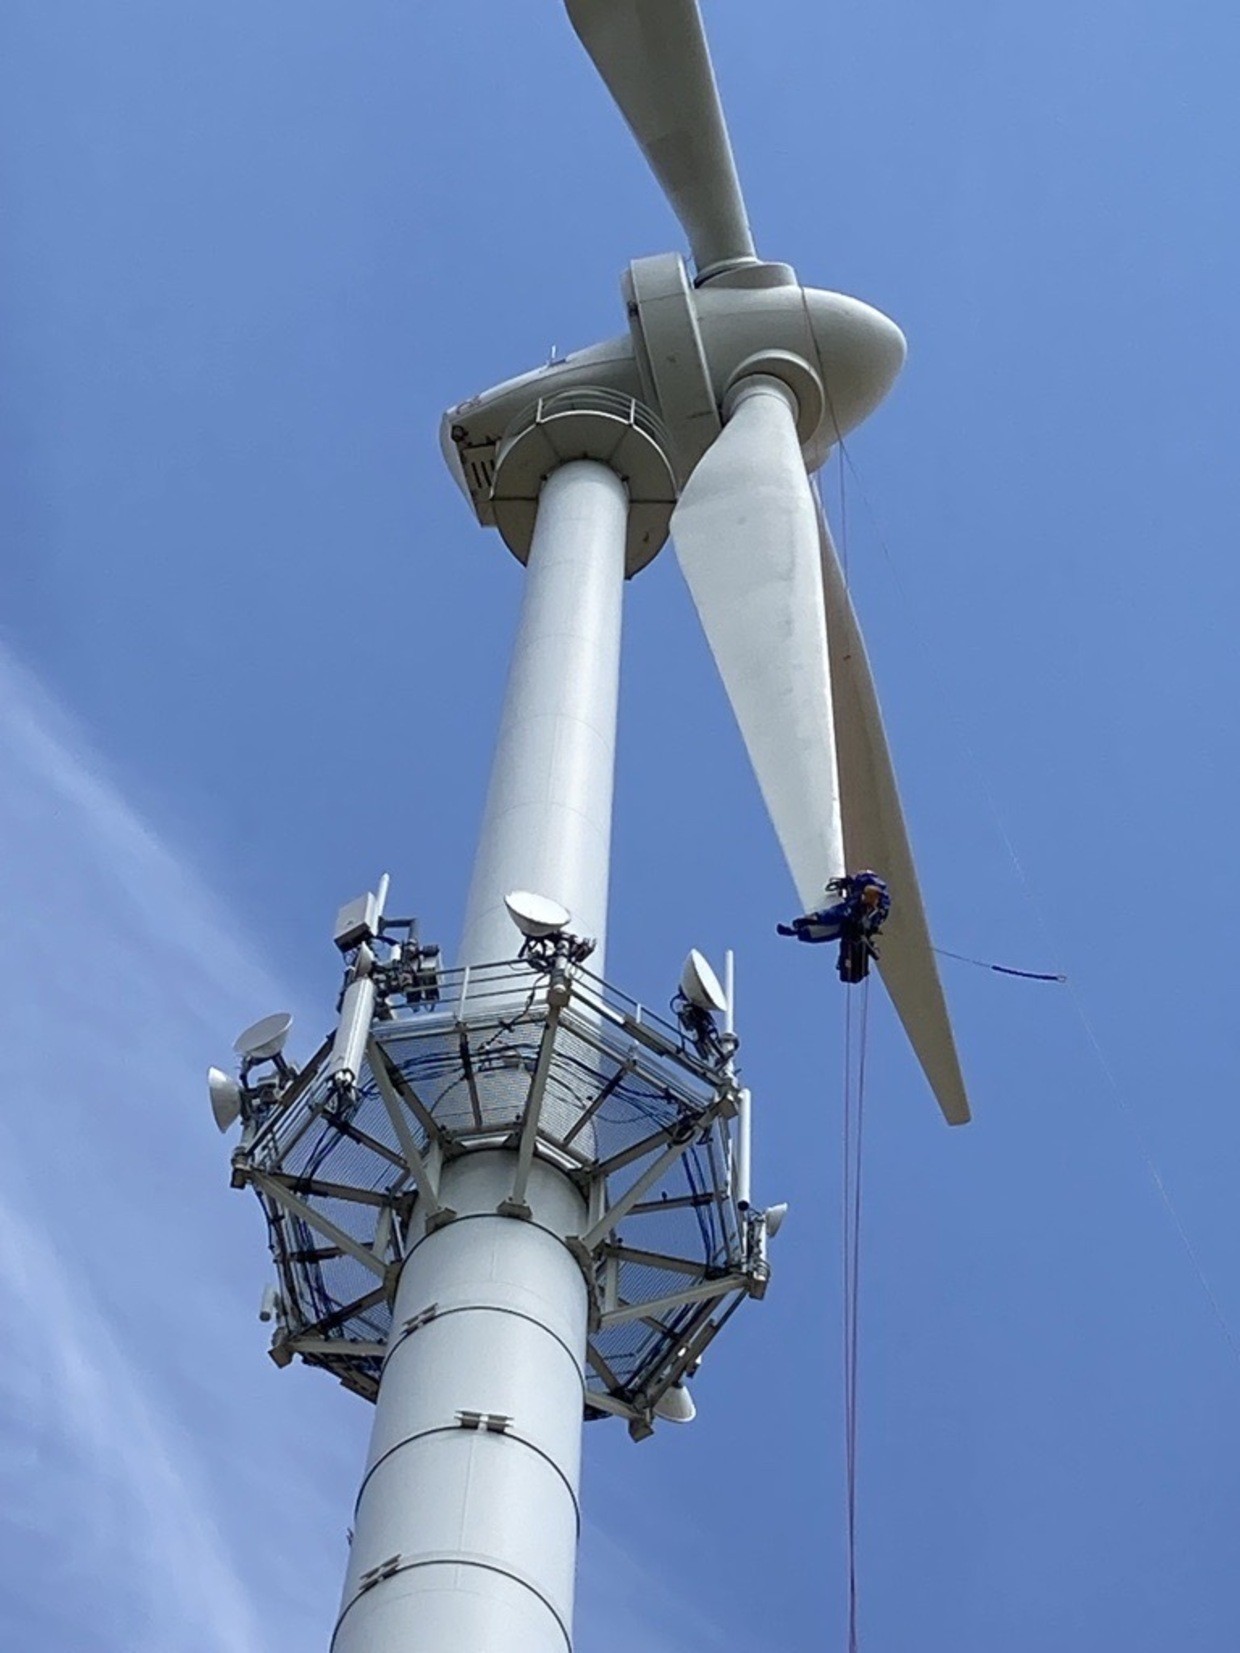 © Rotorblattsanierung am Windkraftwerk Regensburg, Foto: Clemens Reichl